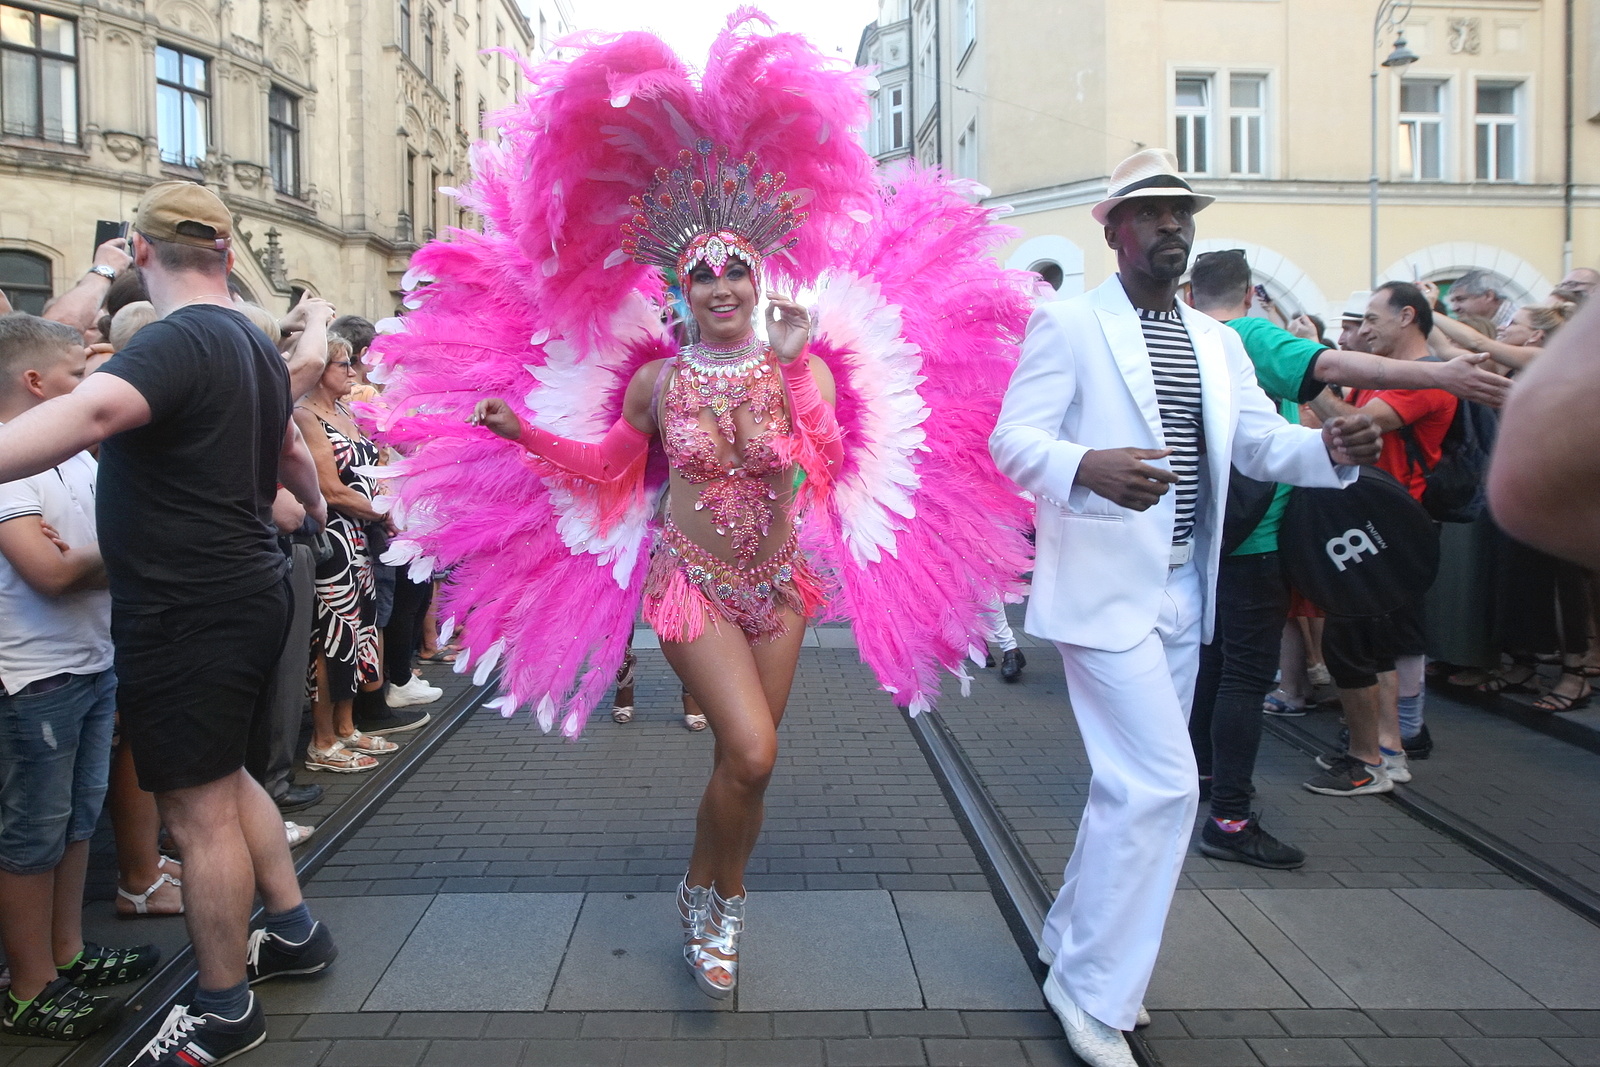 Tanec, bubny, kostýmy: Brazílie zavítala do Brna. Festival začal karnevalem  - Brněnský deník